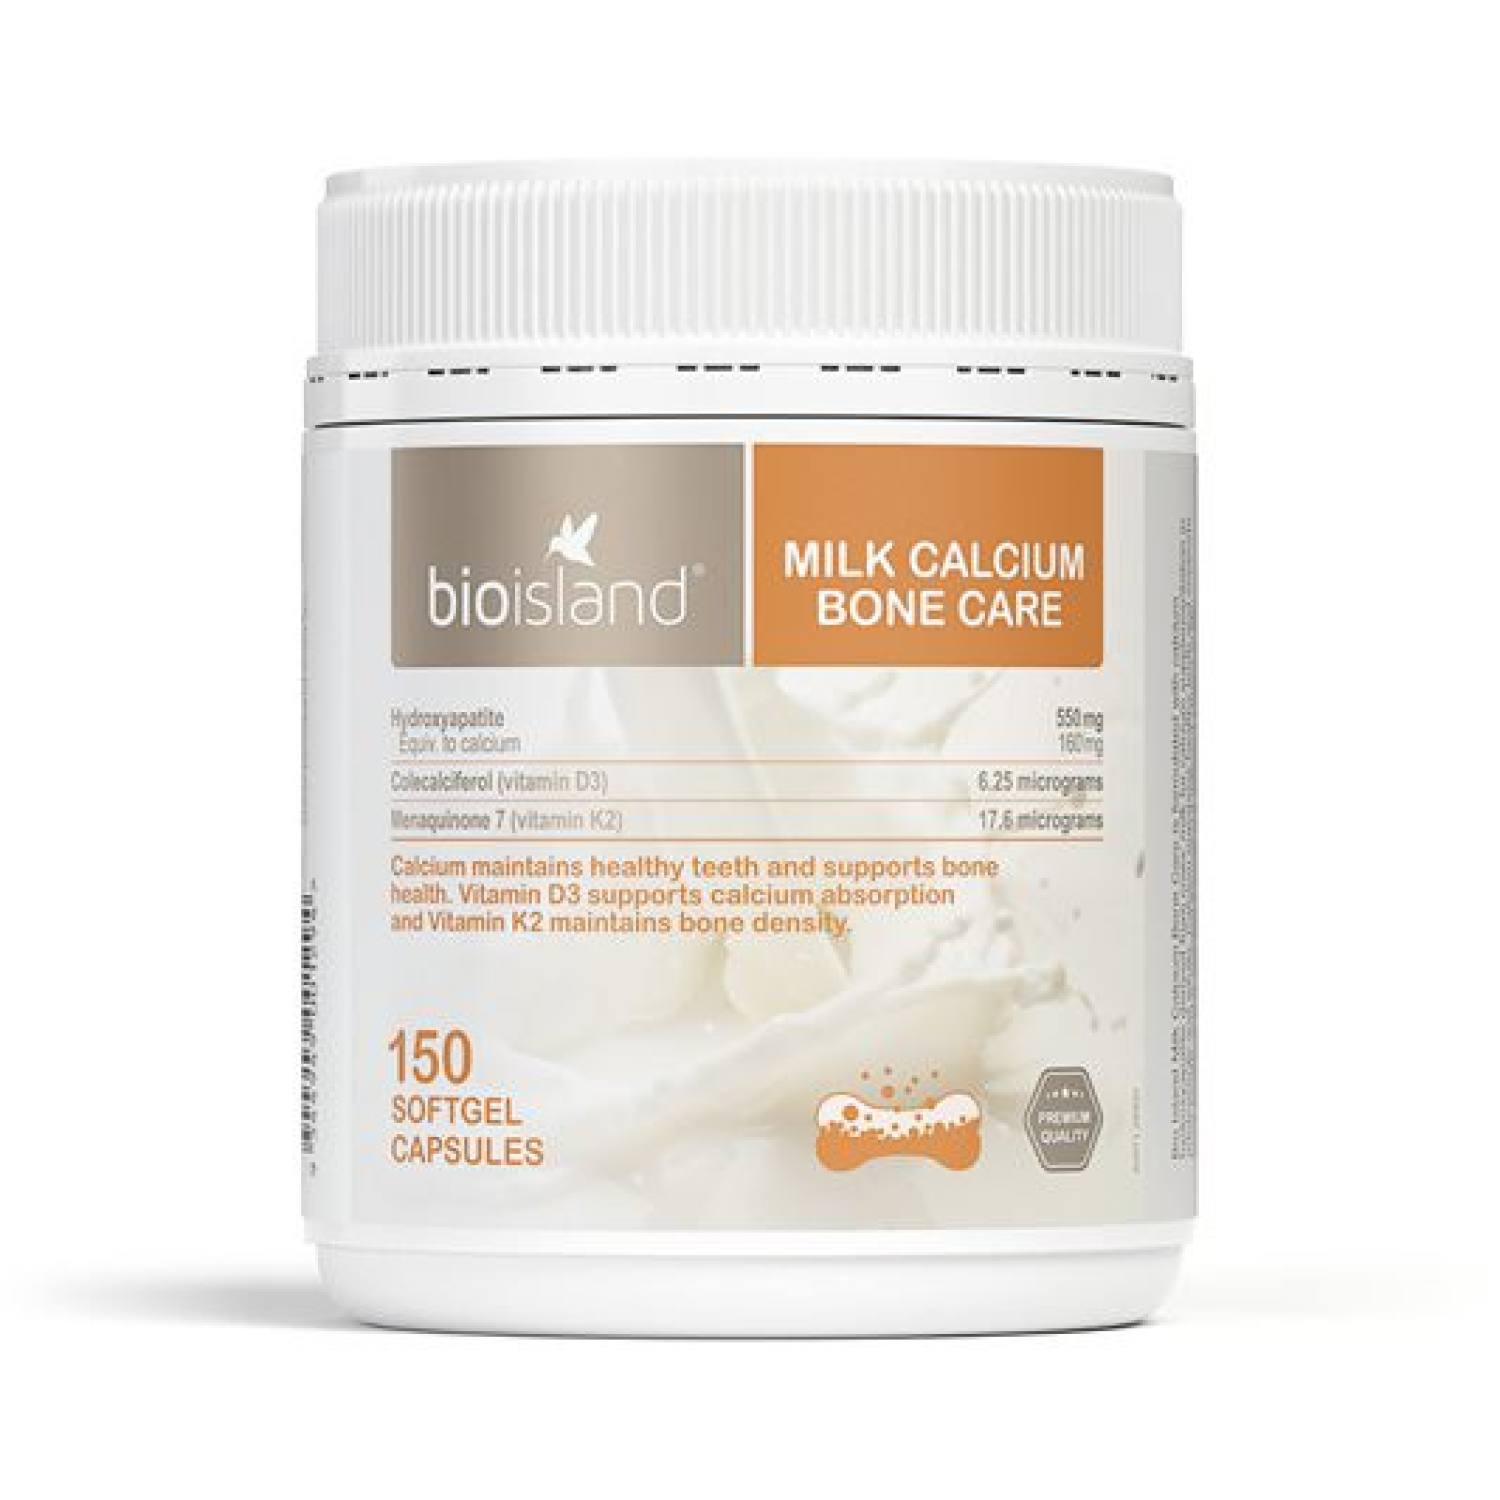 bio island milk calcium bone care 1